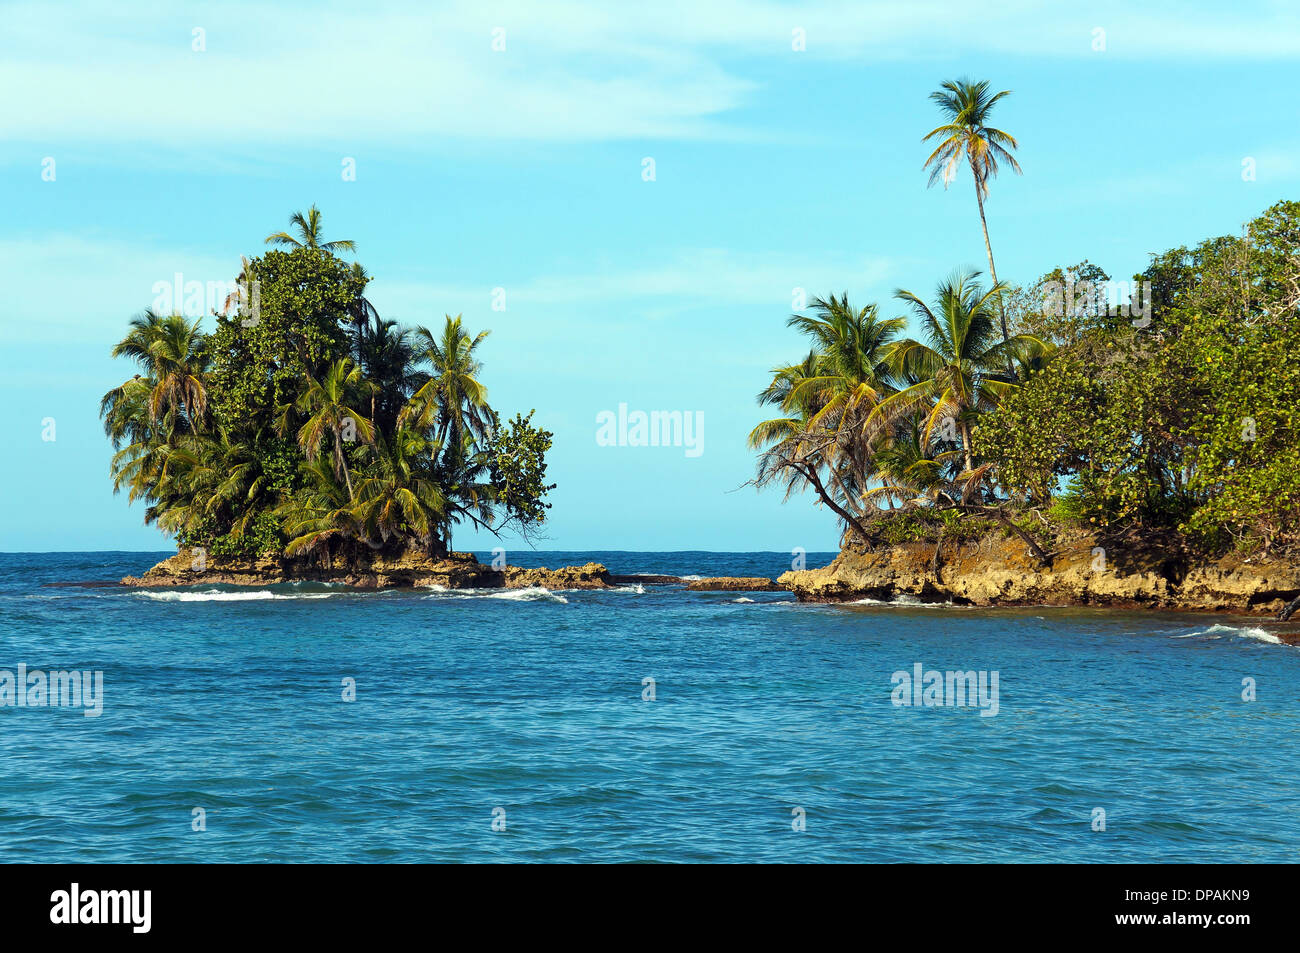 L'îlot rocheux couverts de végétation tropicale, l'archipel de Bocas del Toro, Bastimentos island, mer des Caraïbes, le Panama Banque D'Images